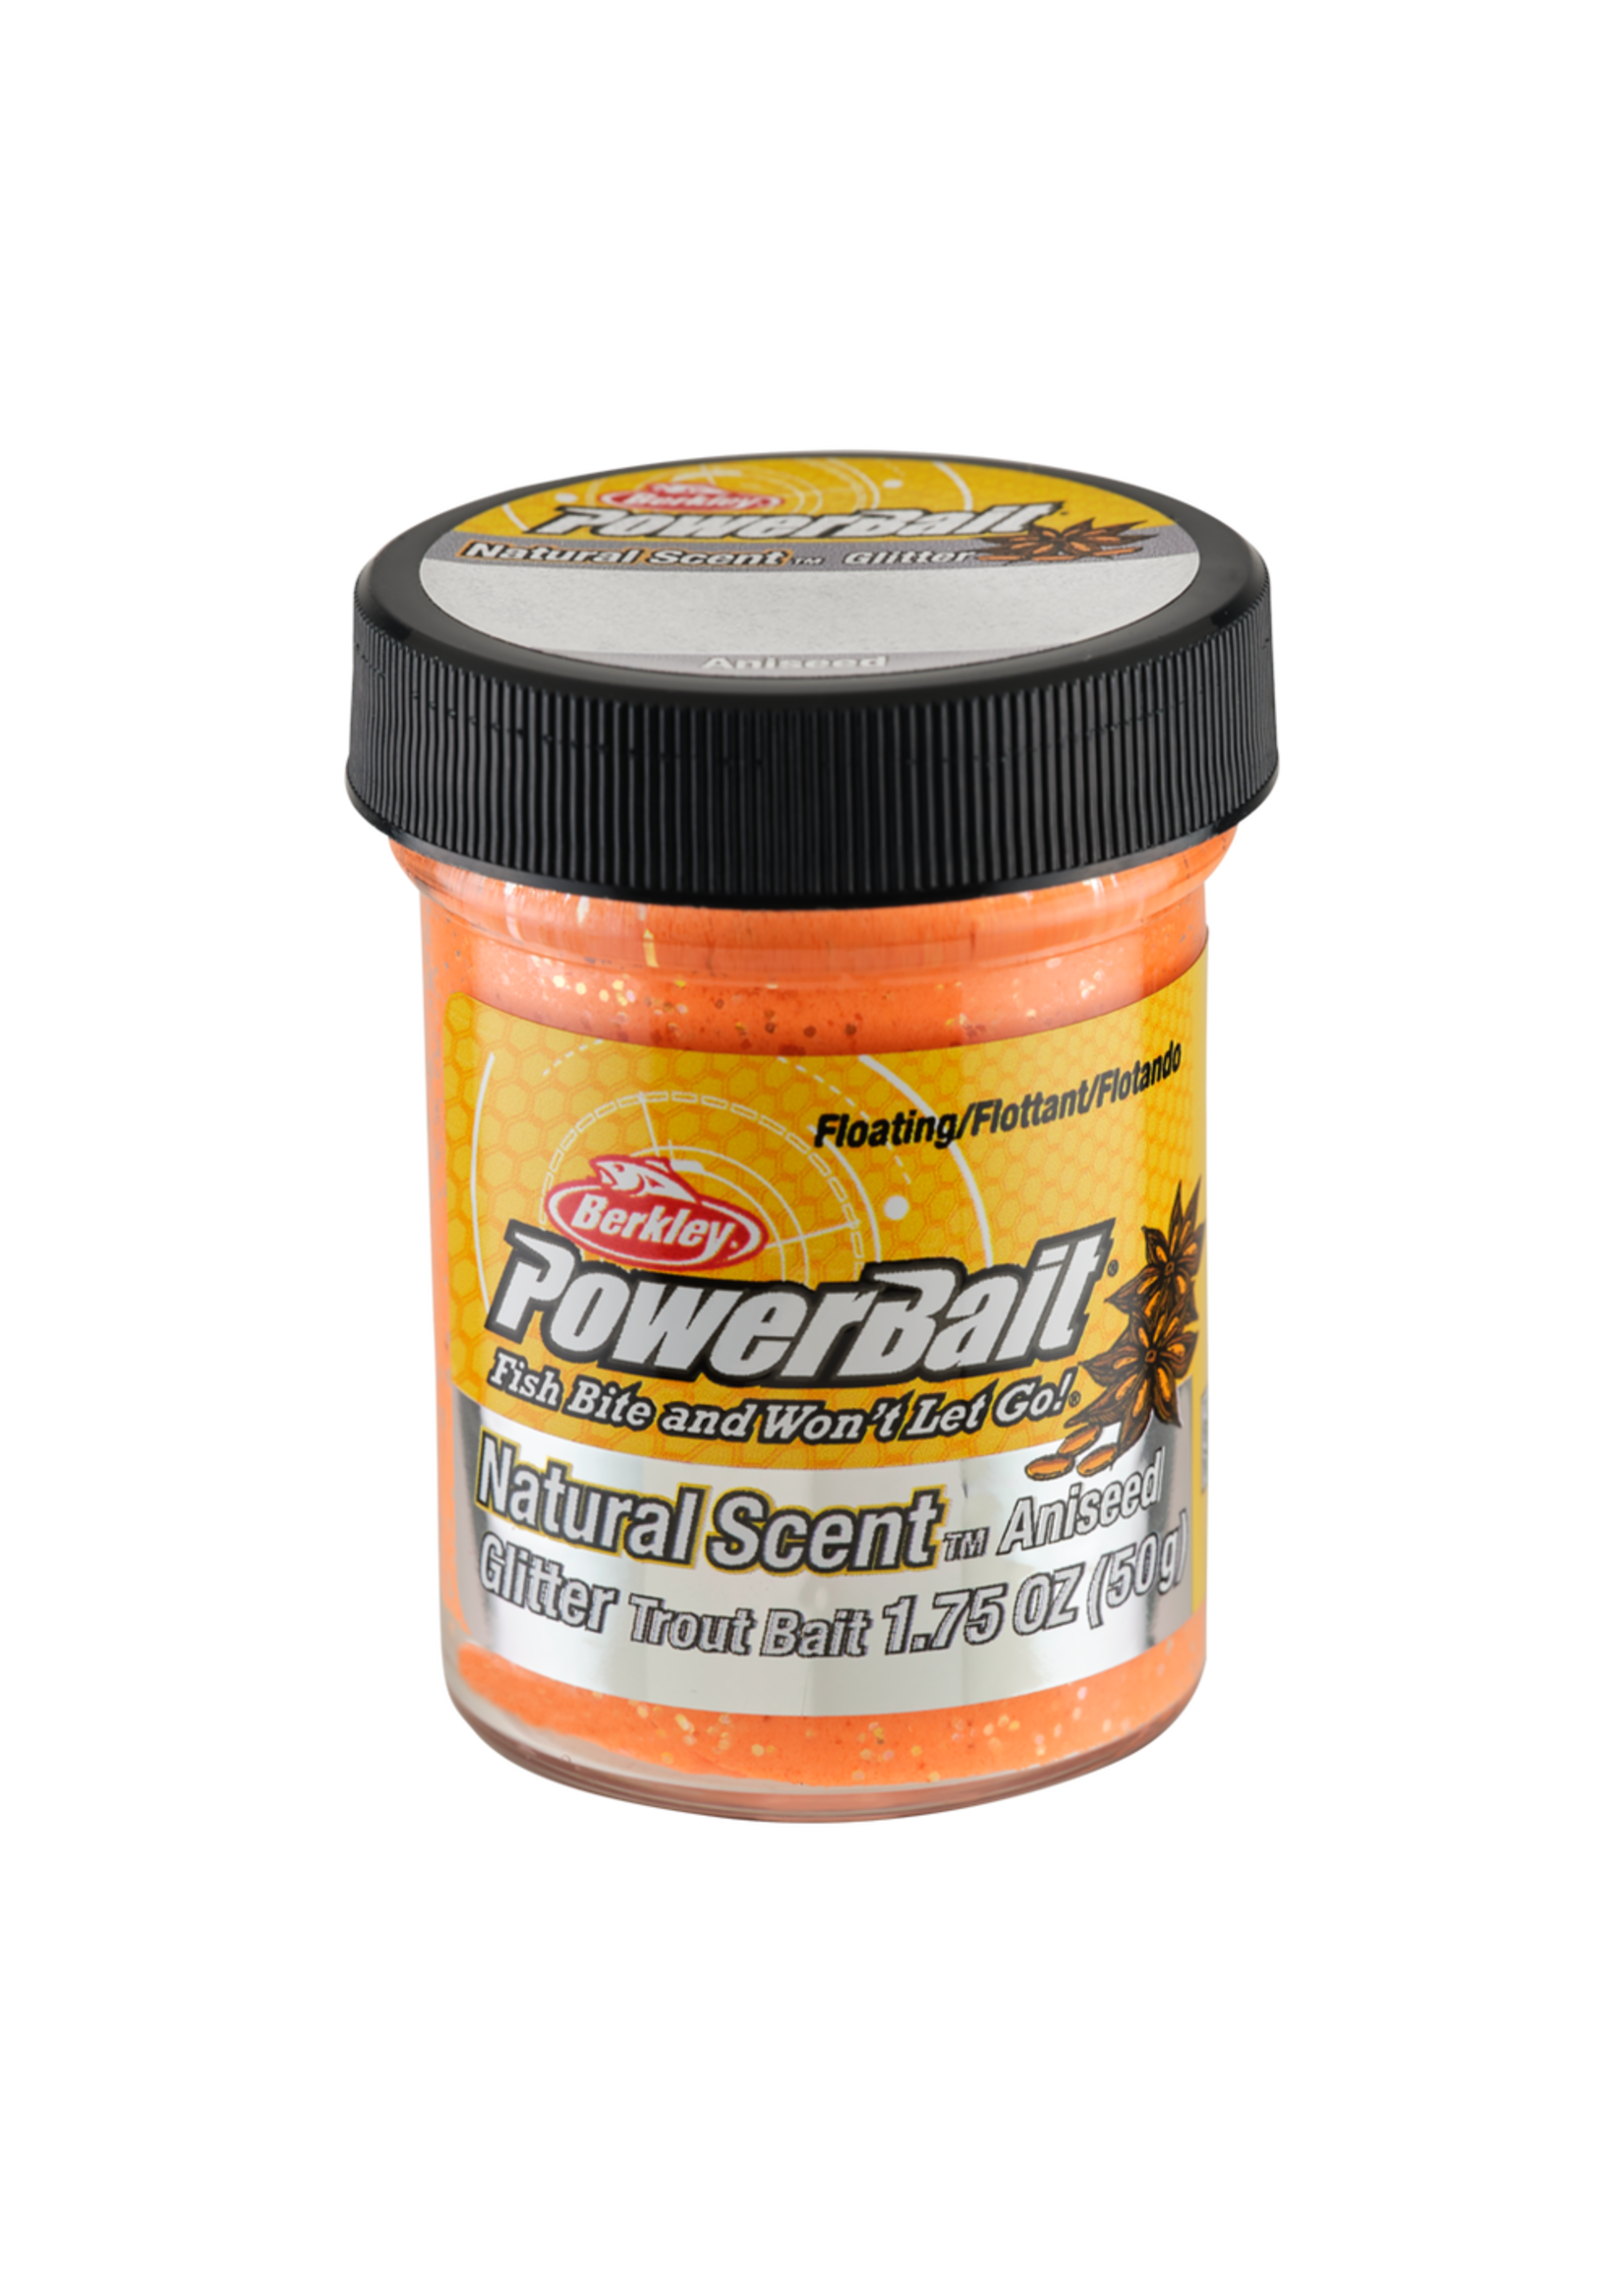 Berkley - PowerBait Natural Scent Glitter Trout Bait - Garlic, Rainbow